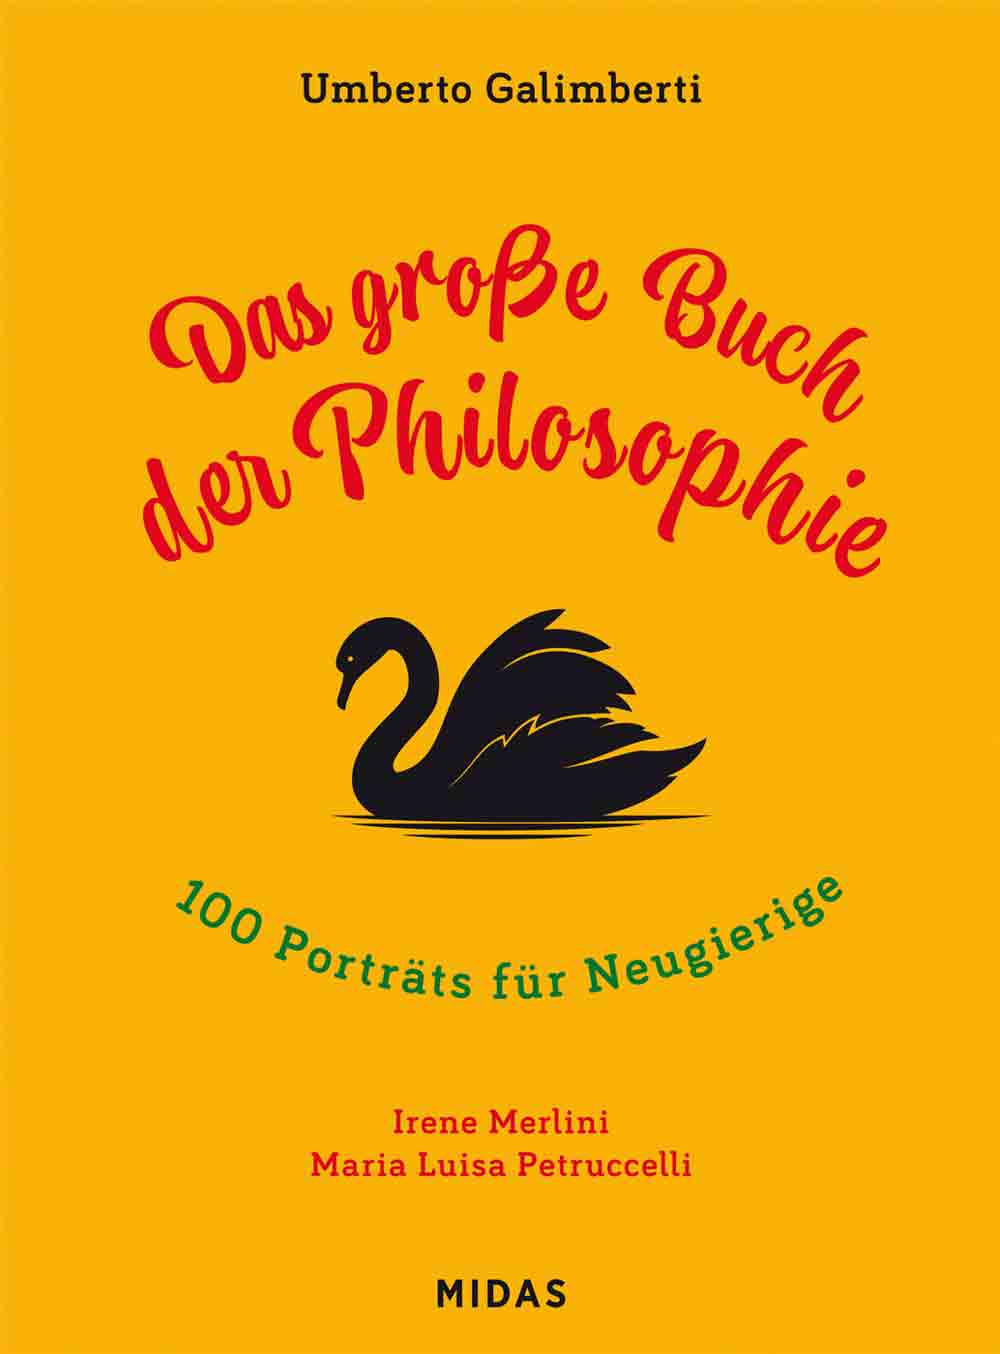 Lesetipps für Gütersloh, Das große Buch der Philosophie, 100 Porträts für Neugierige, Midas Kinderbuch